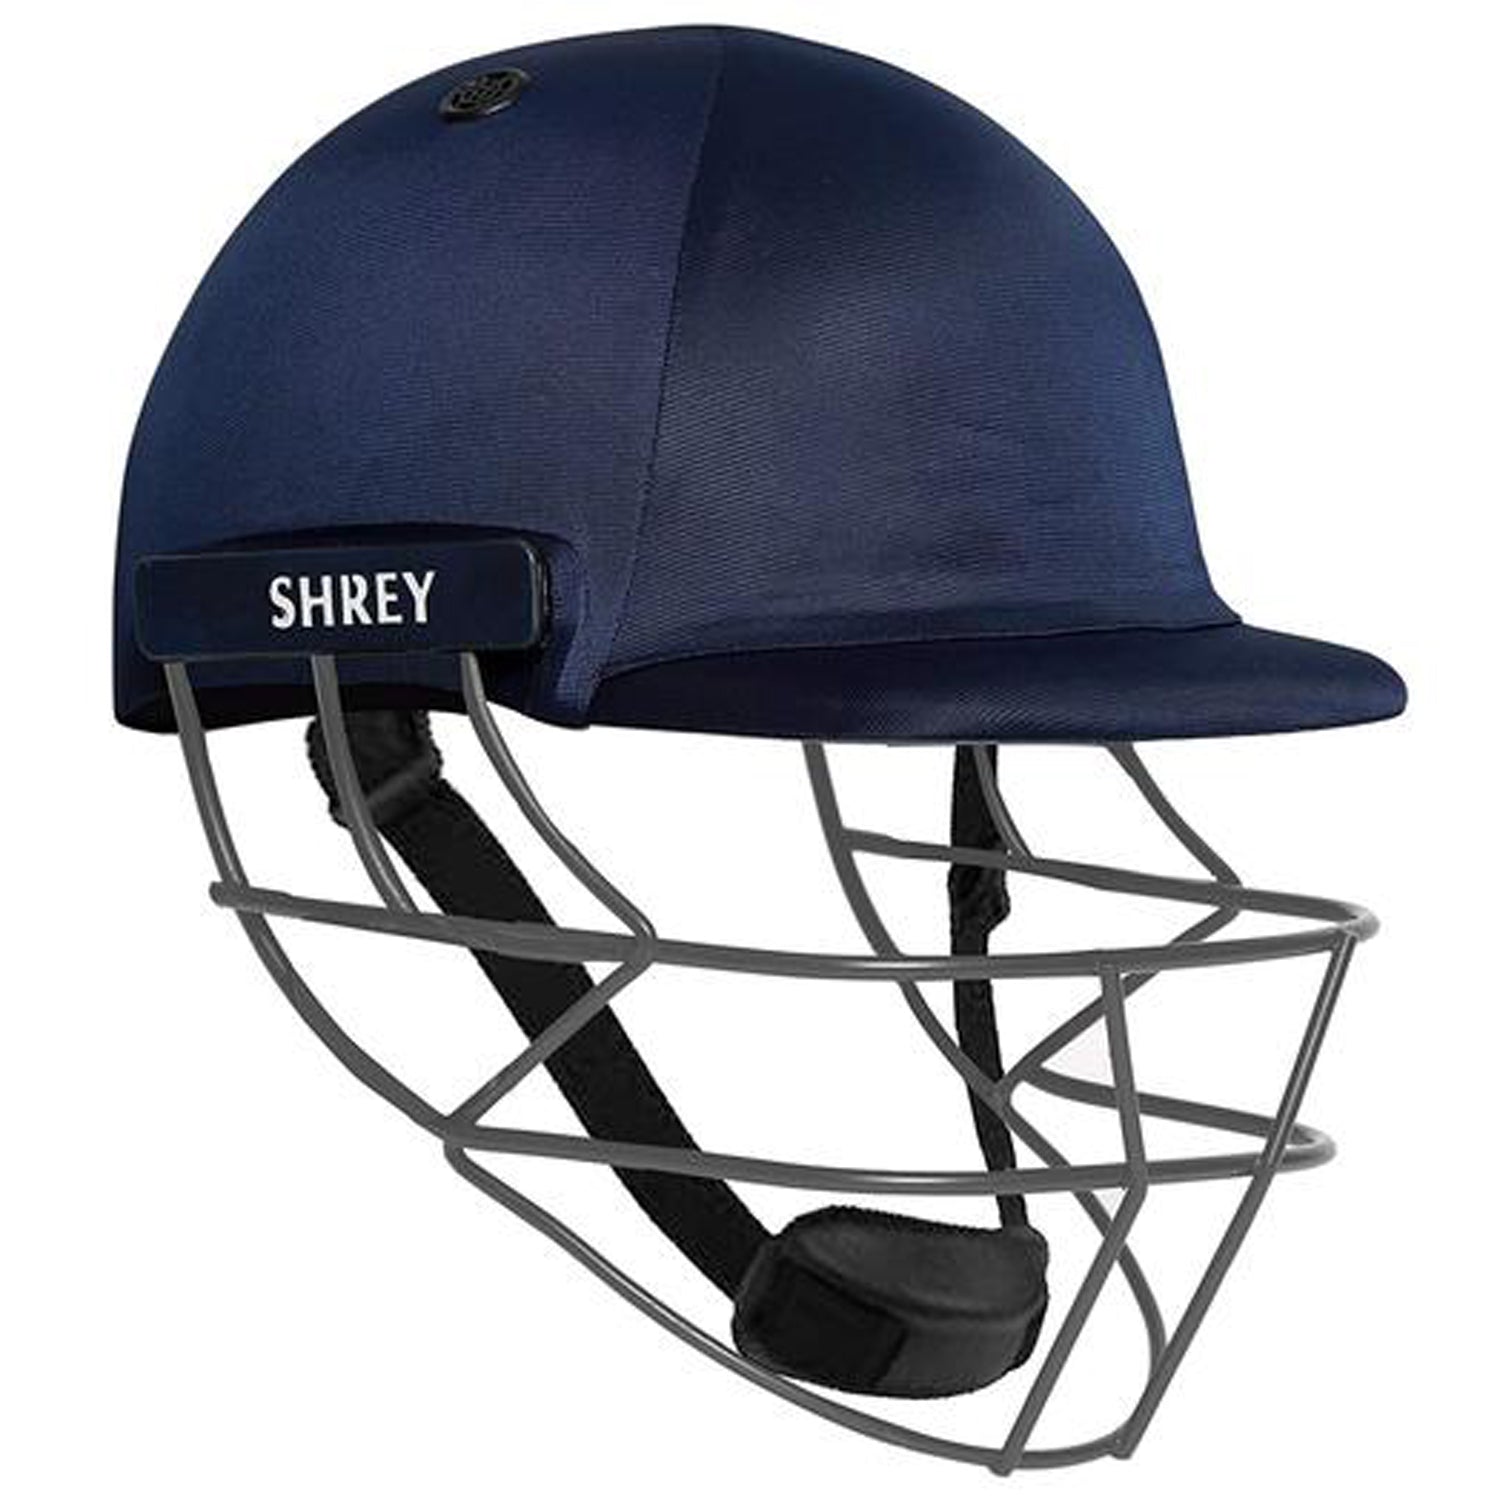 Shrey Performance Mild Steel Visor Cricket Helmet, Mens (Navy Blue)